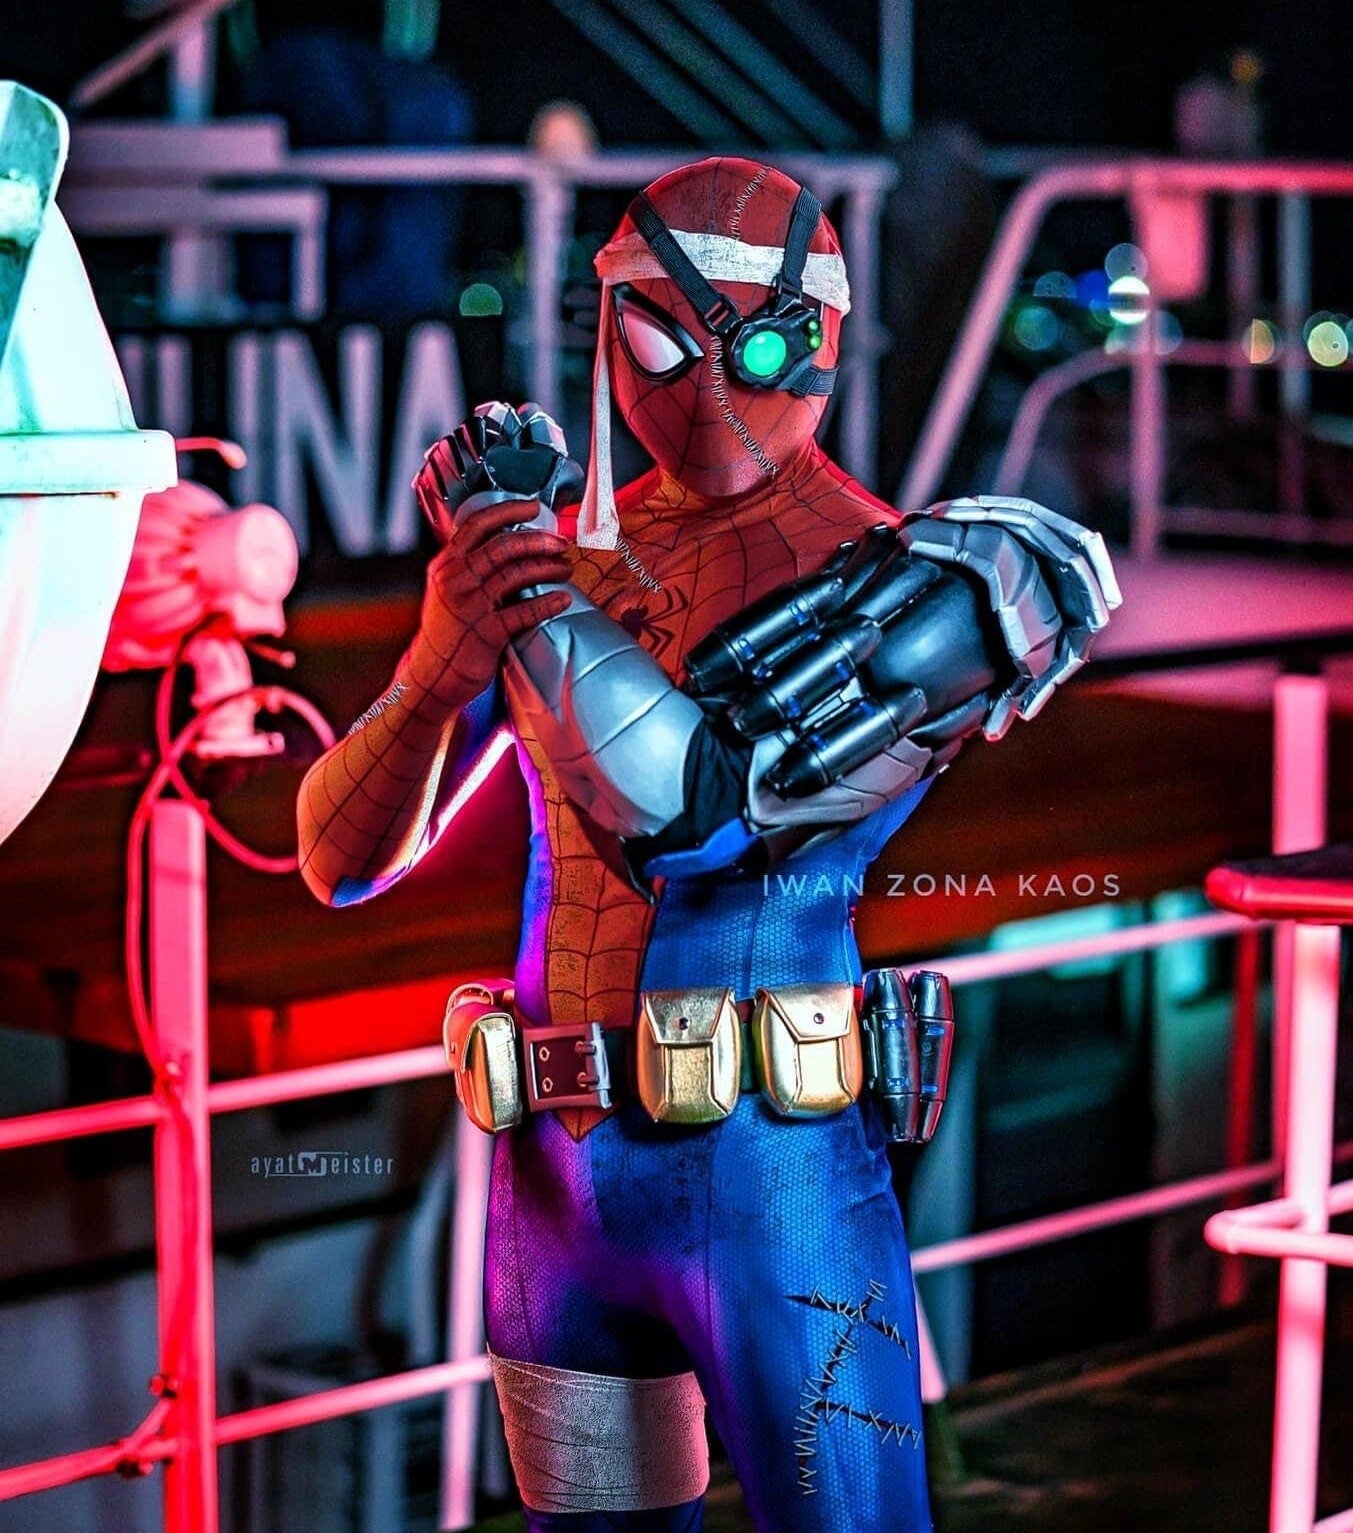 Cyborg spiderman / eye / cyborg arm / belt